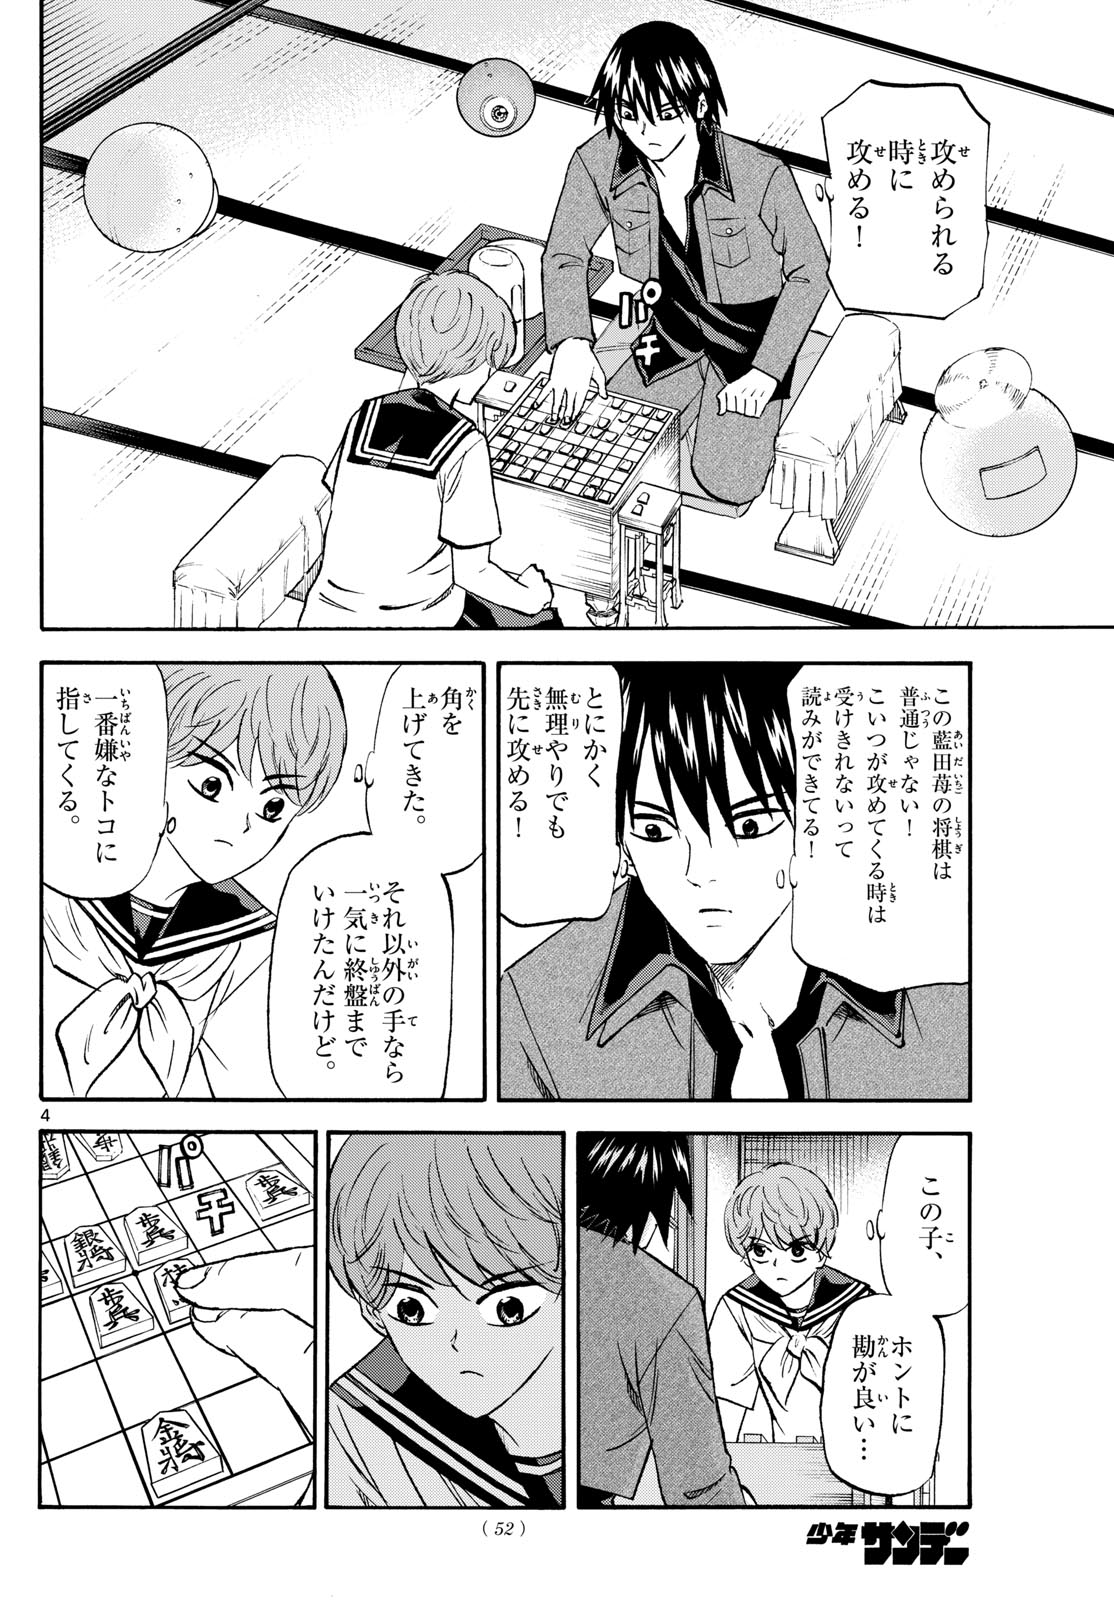 Tatsu to Ichigo - Chapter 194 - Page 4